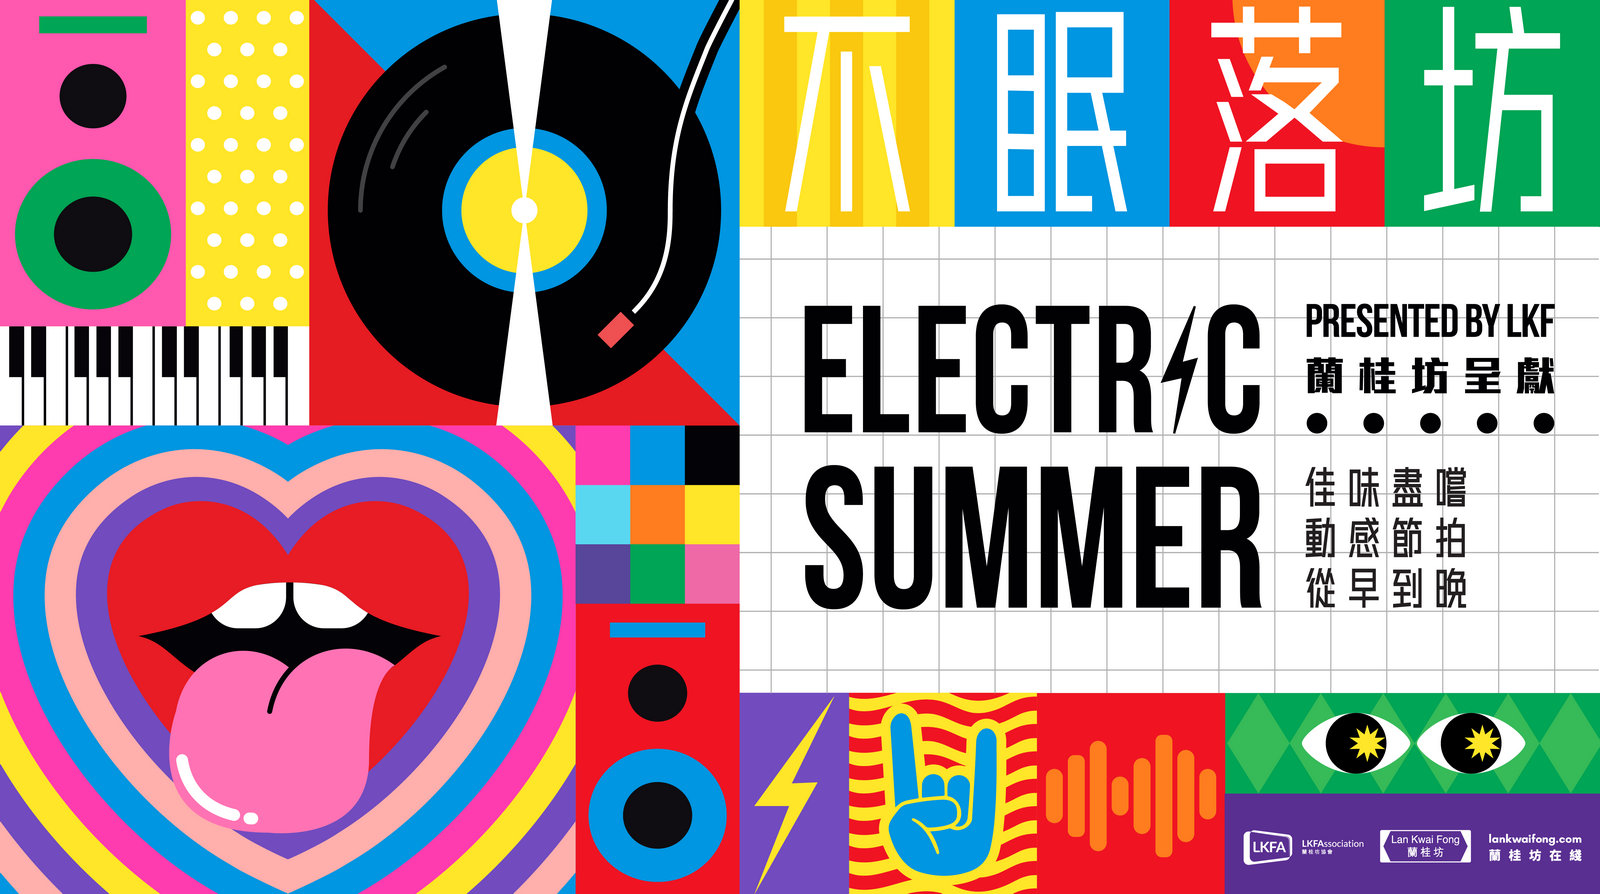 Electric-Summer-at-Lan-Kwai-Fong.jpg